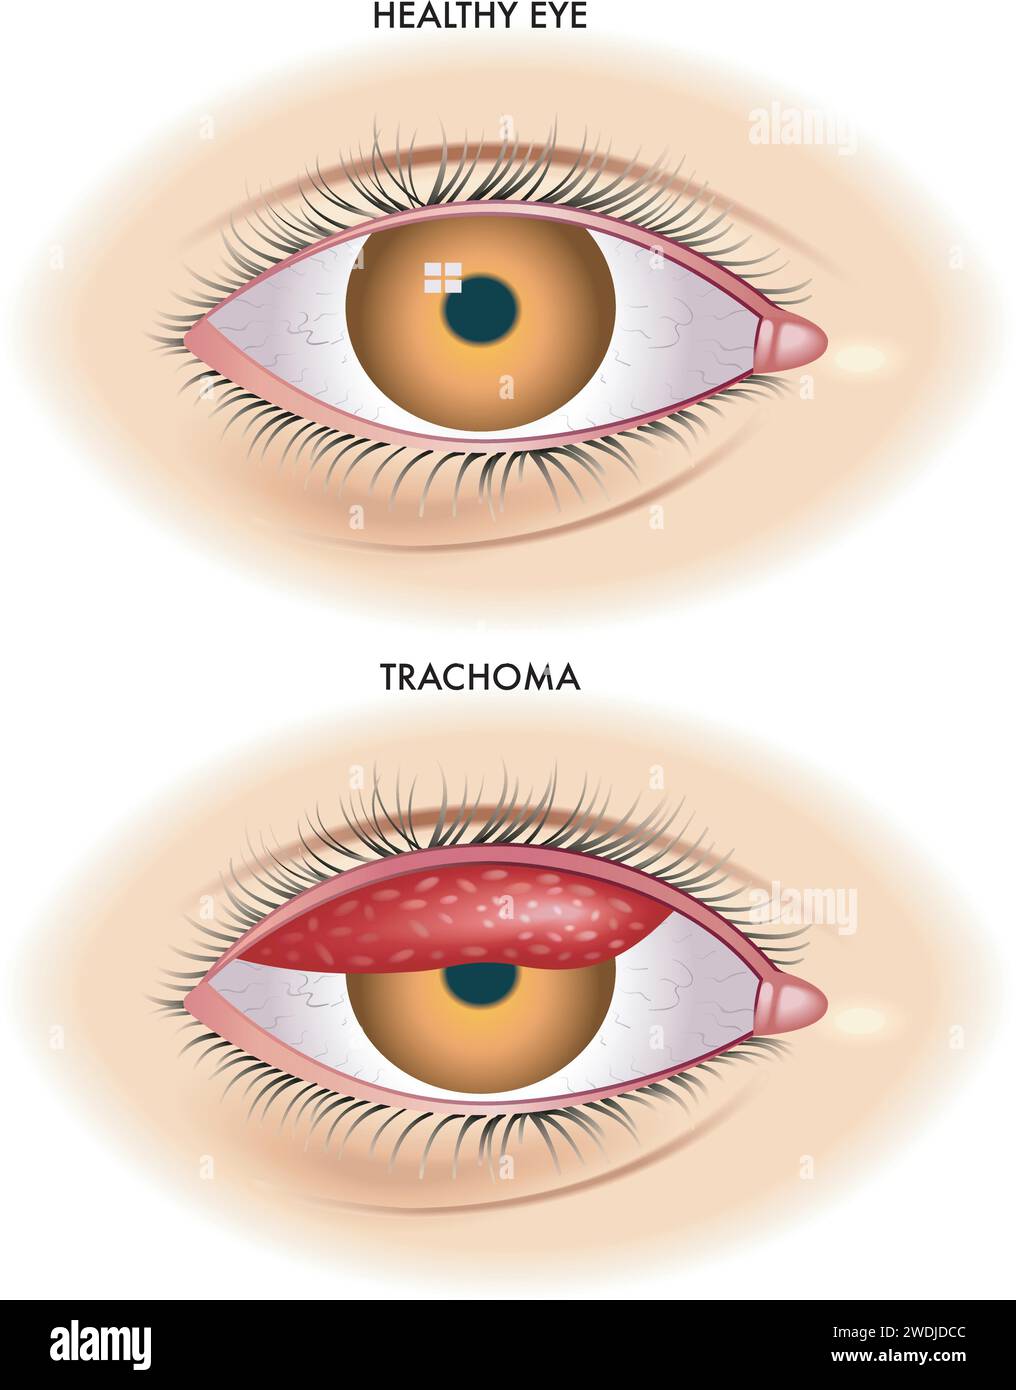 L’illustration médicale montre la comparaison entre un œil normal et un œil atteint de trachome, une maladie infectieuse causée par la bactérie Chlamydia tracha Illustration de Vecteur